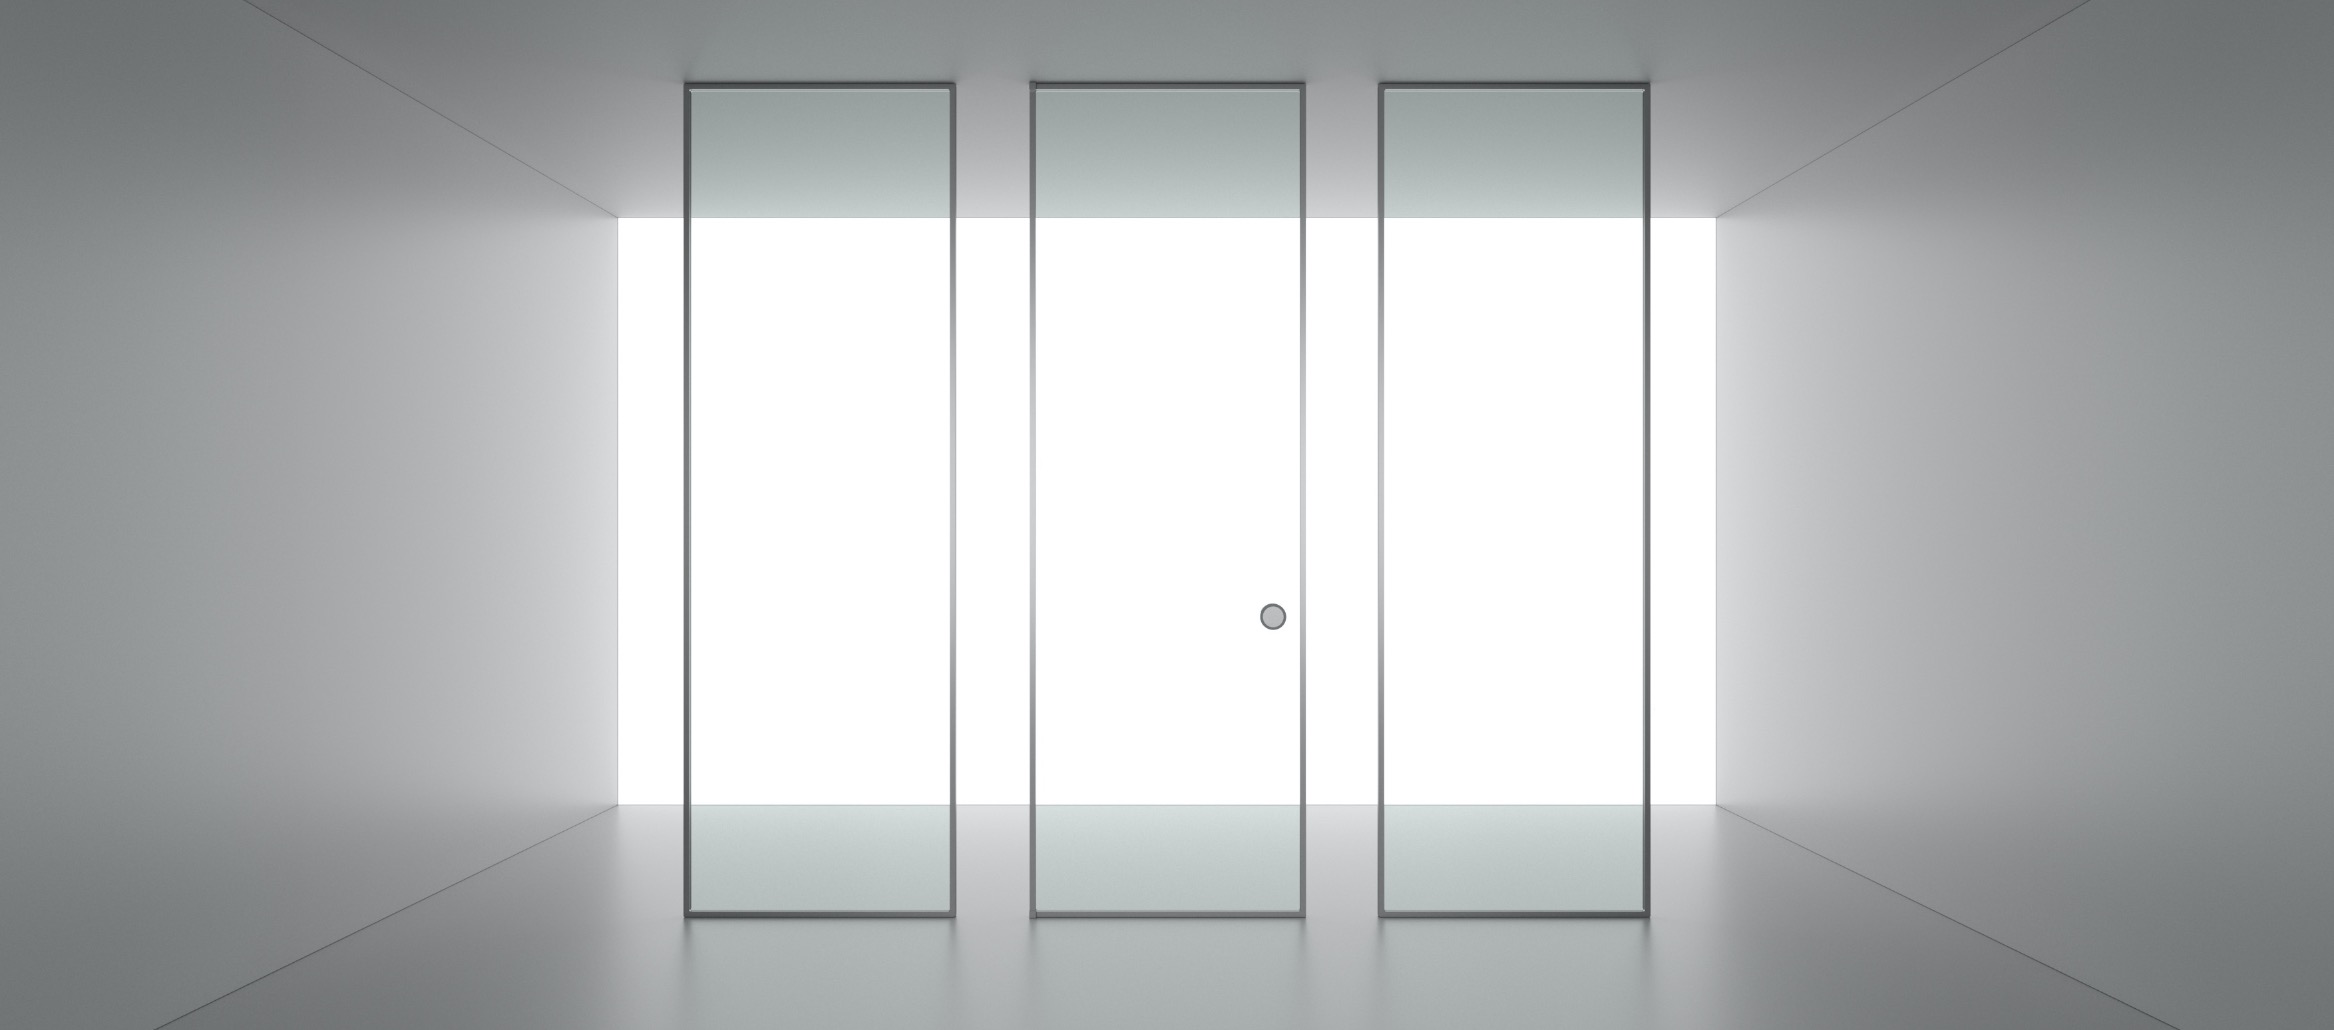 Il sistema modulare Suite è formato da pannelli fissi e porte in vetro e alluminio